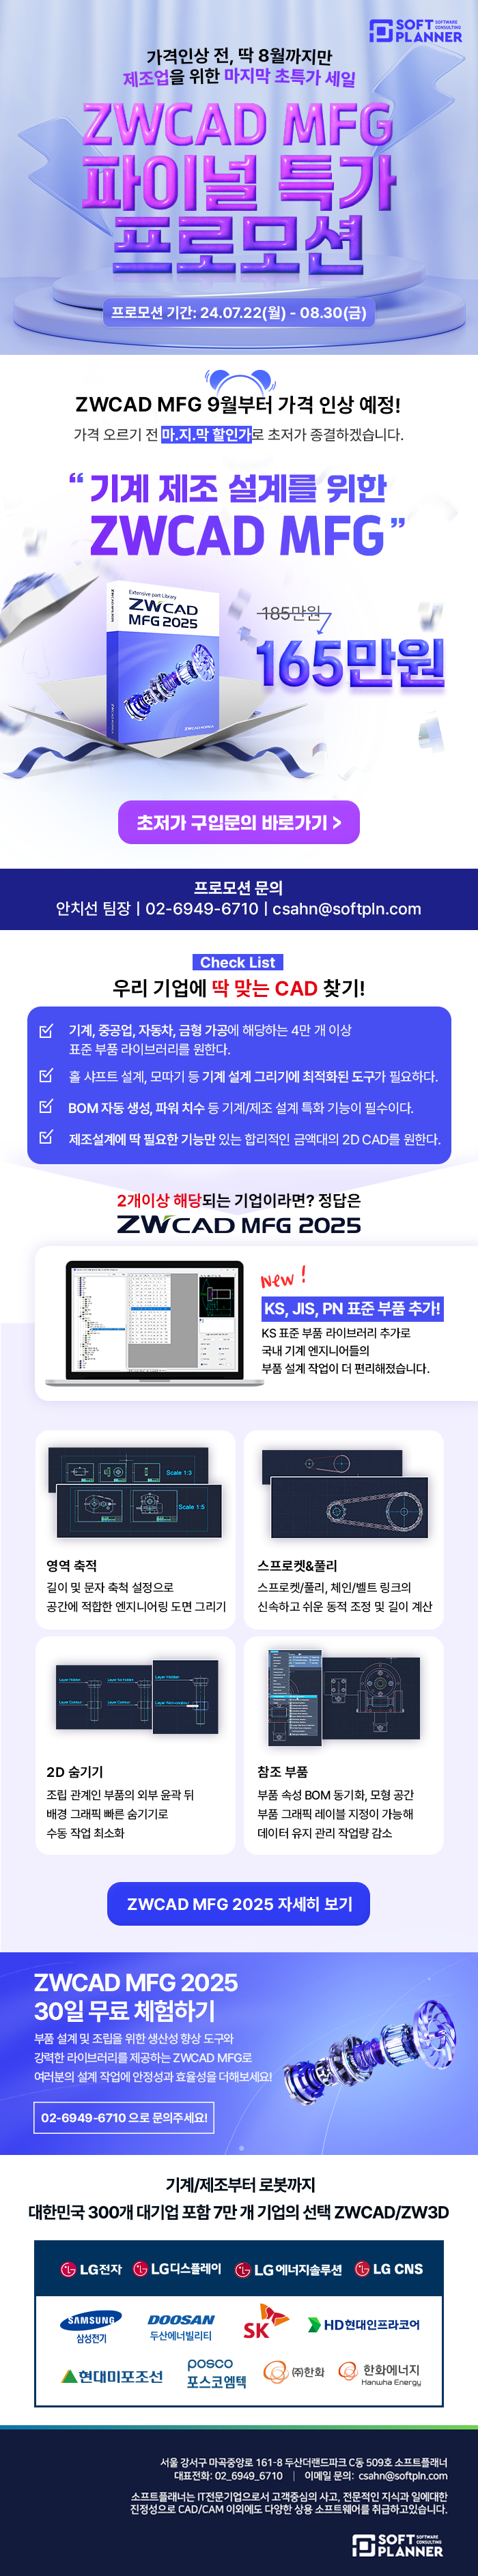 ZWCAD_MFG_2025_프로모션_상세페이지